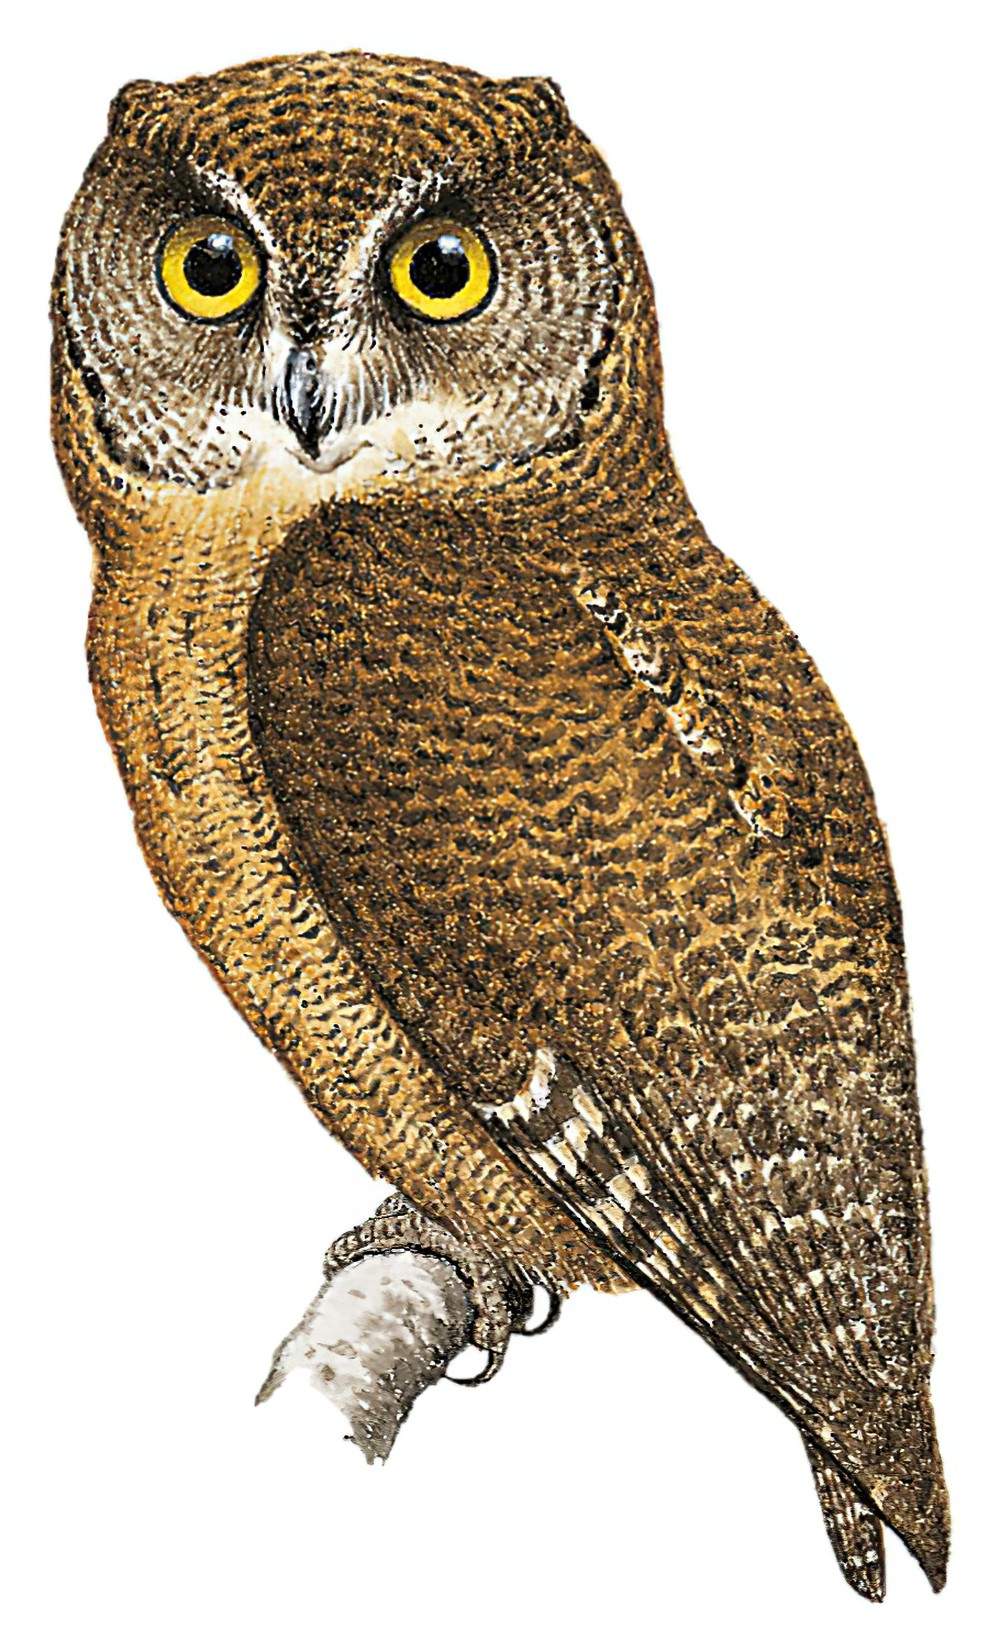 Comoro Scops-Owl / Otus pauliani